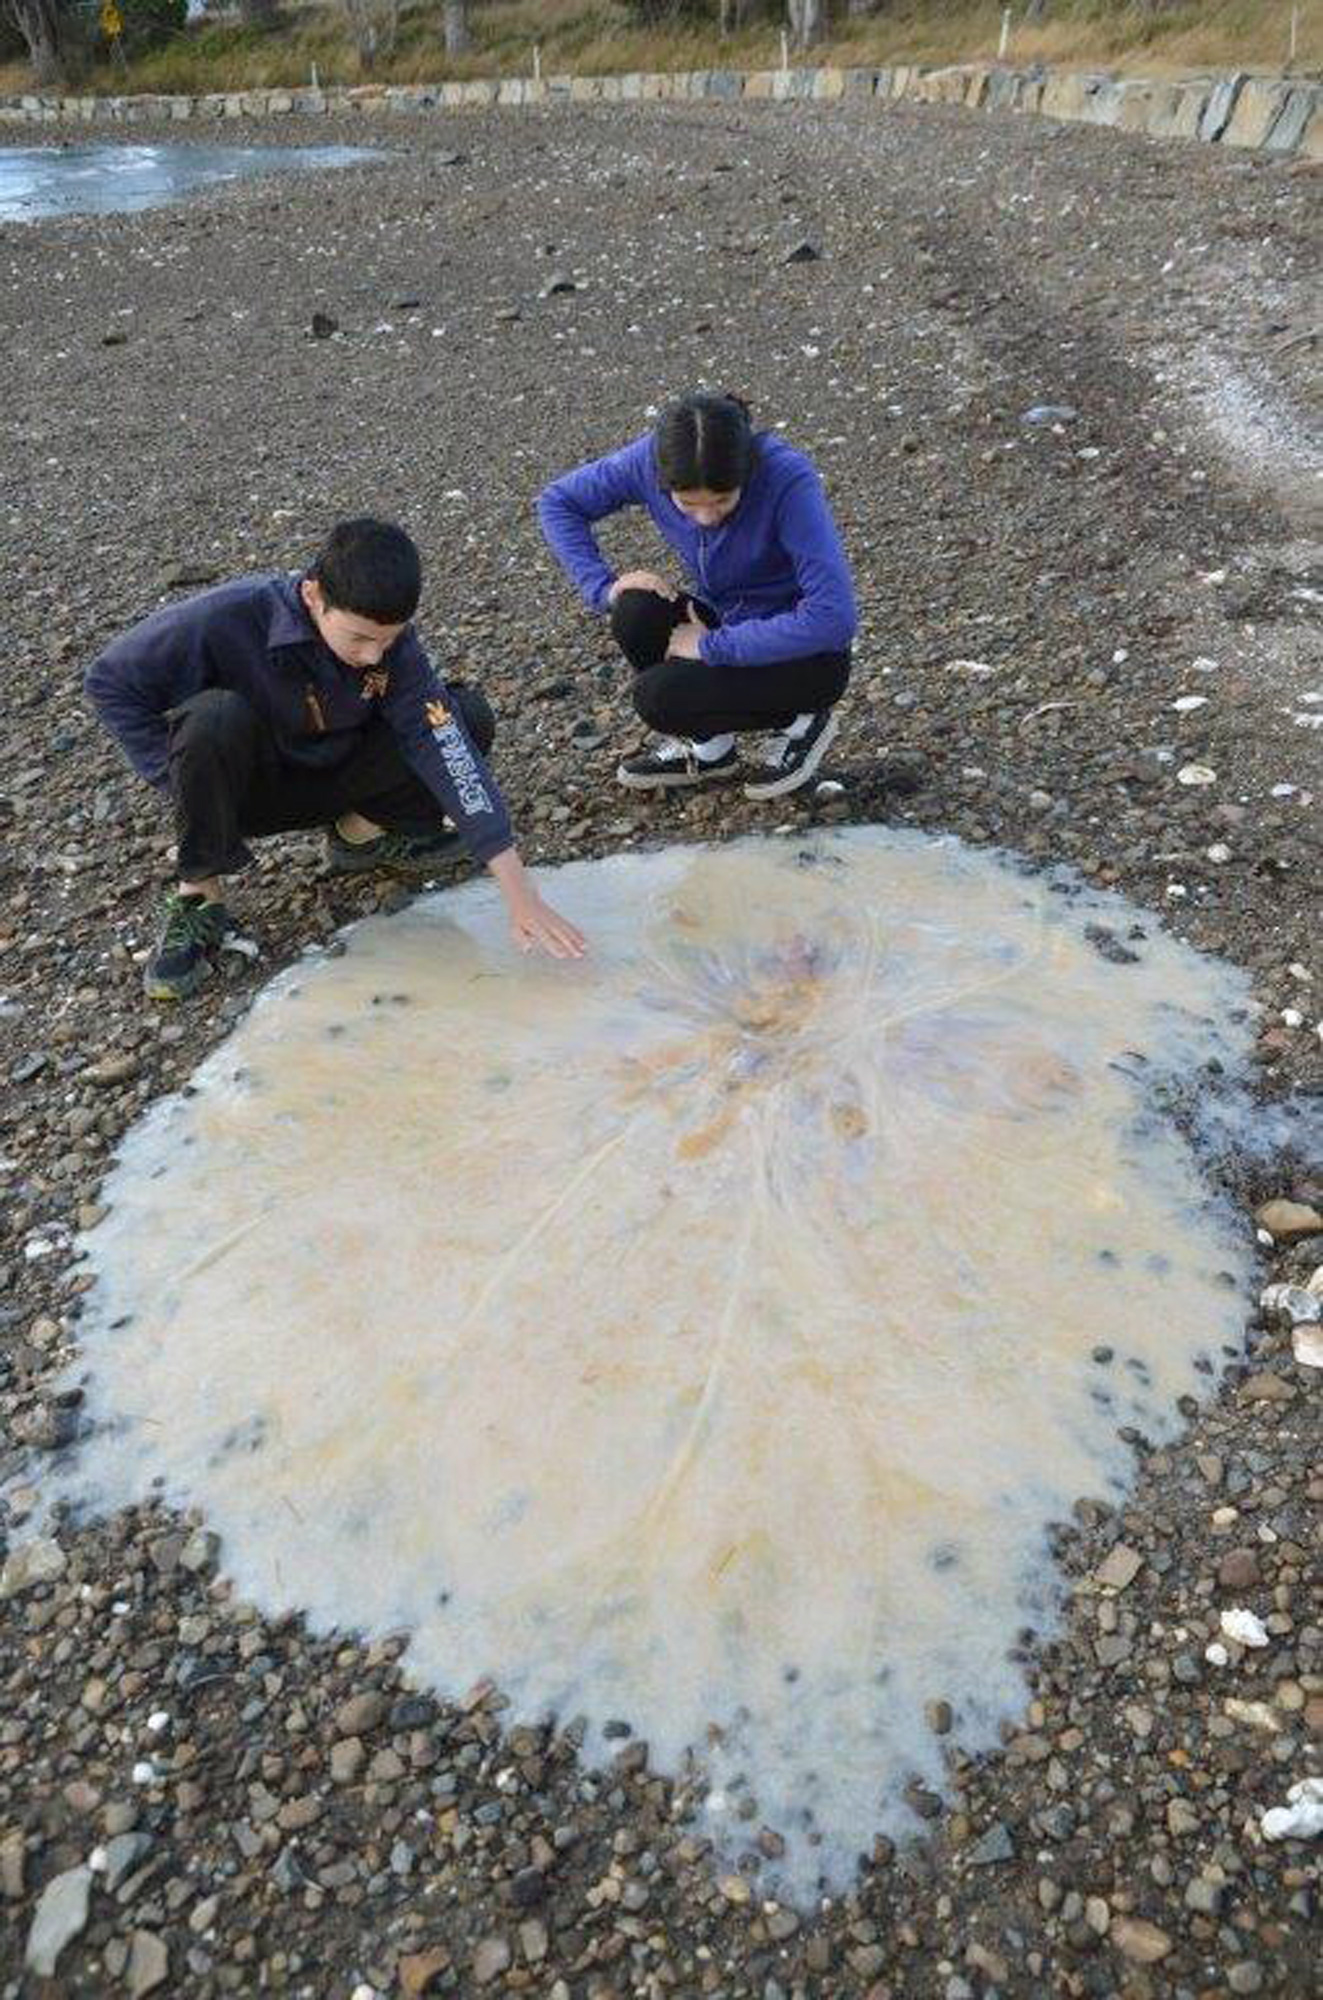 Une méduse géante s'échoue sur une plage en Australie